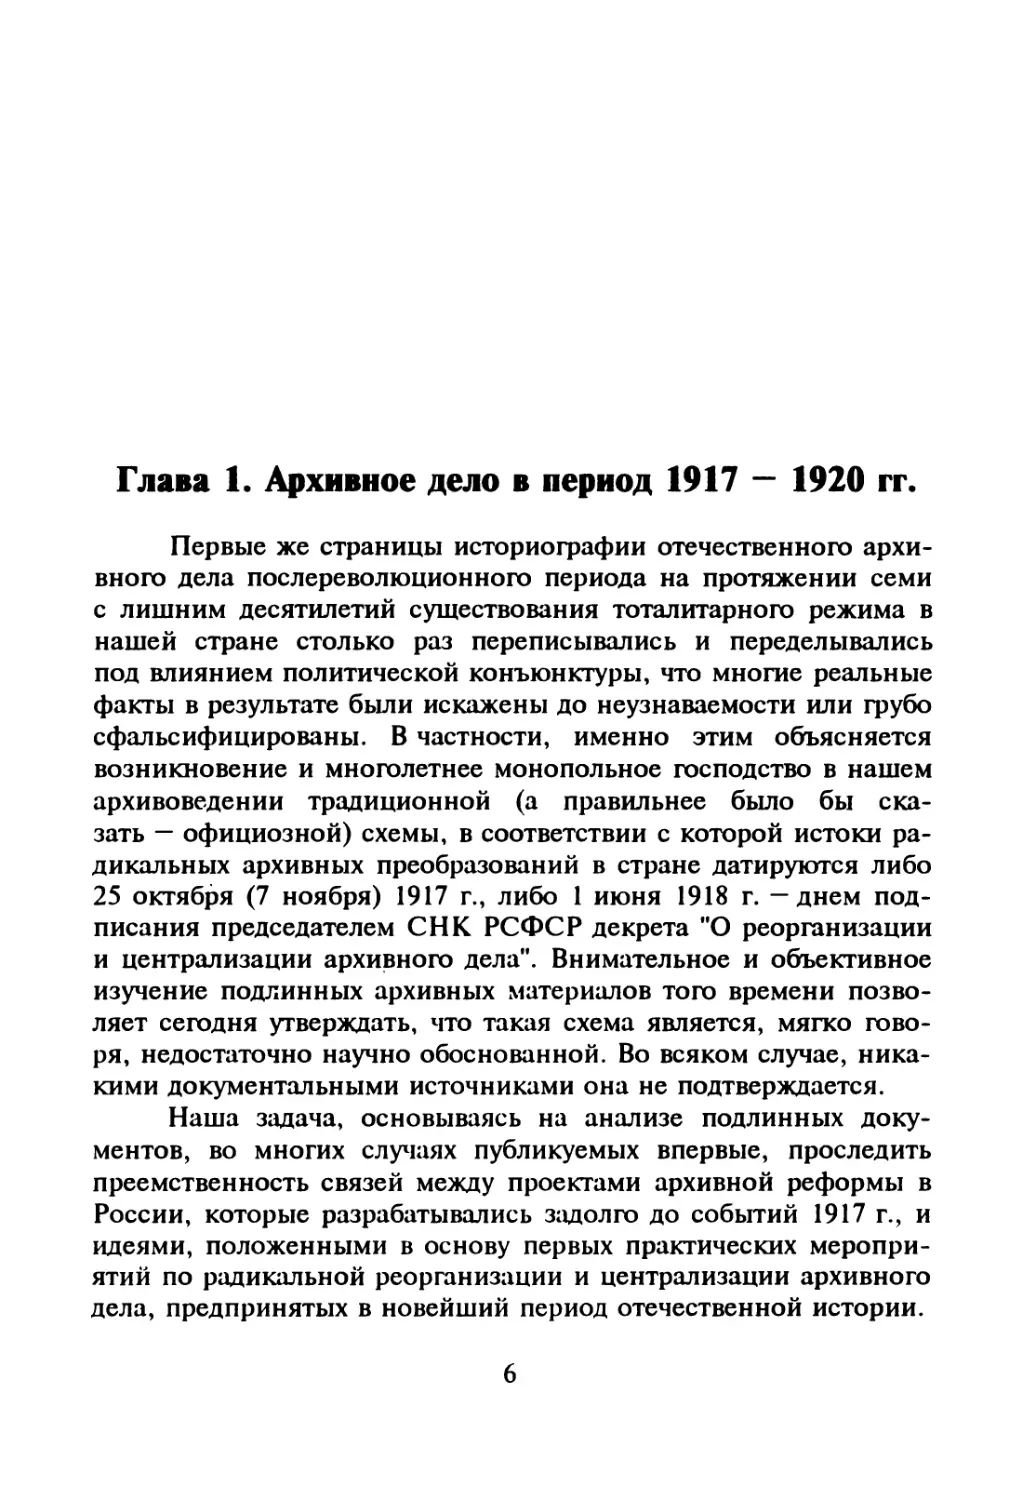 Глава 1. Архивное дело в период 1917-1920 гг.